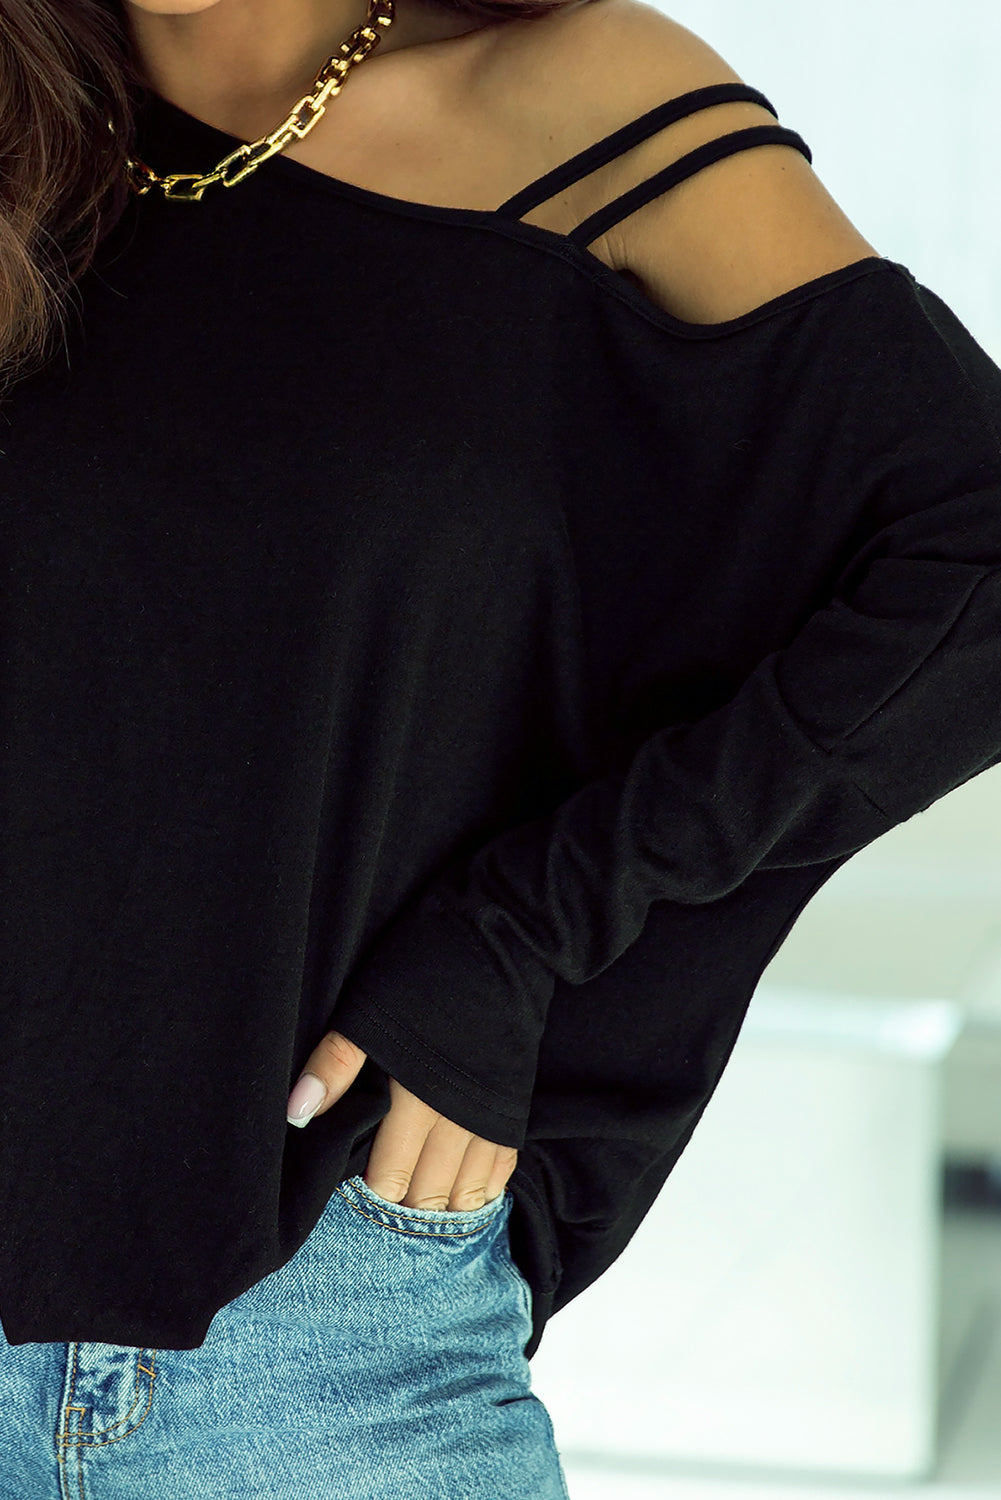 Crna majica s dugim rukavima s asimetričnim remenima i hladnim ramenima